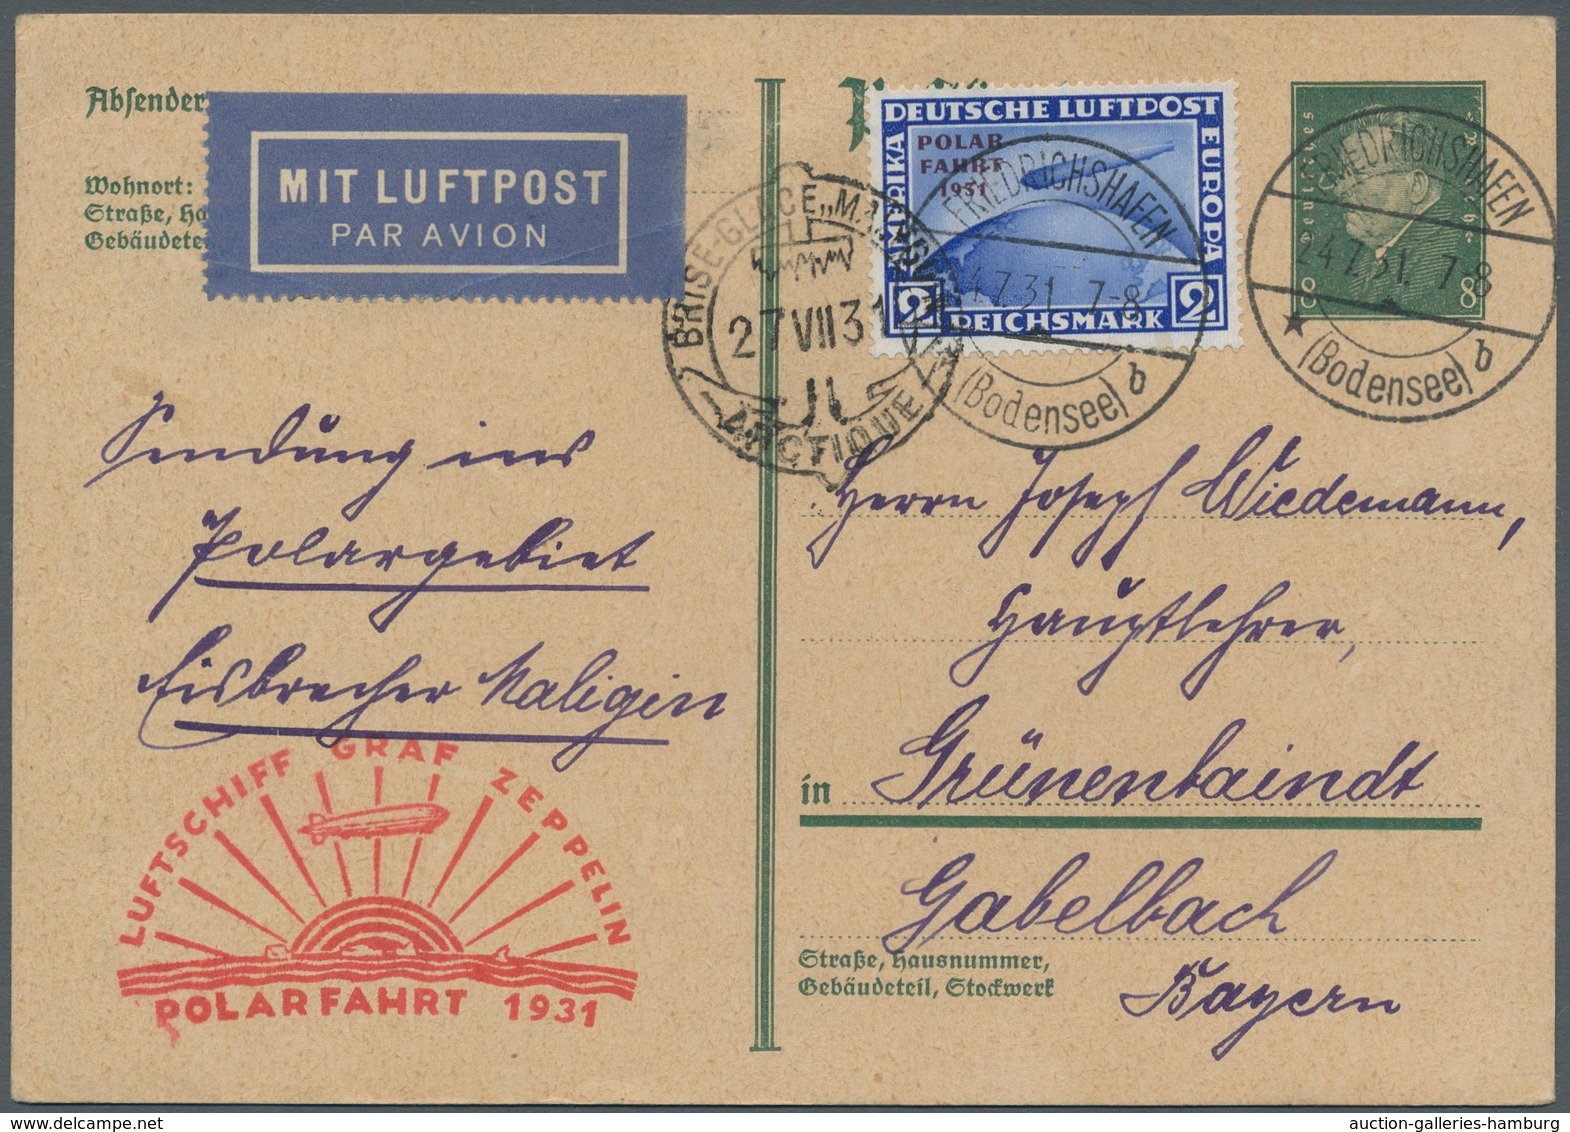 Zeppelinpost Deutschland: 1931 - Polarfahrt, Selten Für Zeppelinfahrten Verwendete 8 Pfg. Ganzsachen - Luft- Und Zeppelinpost